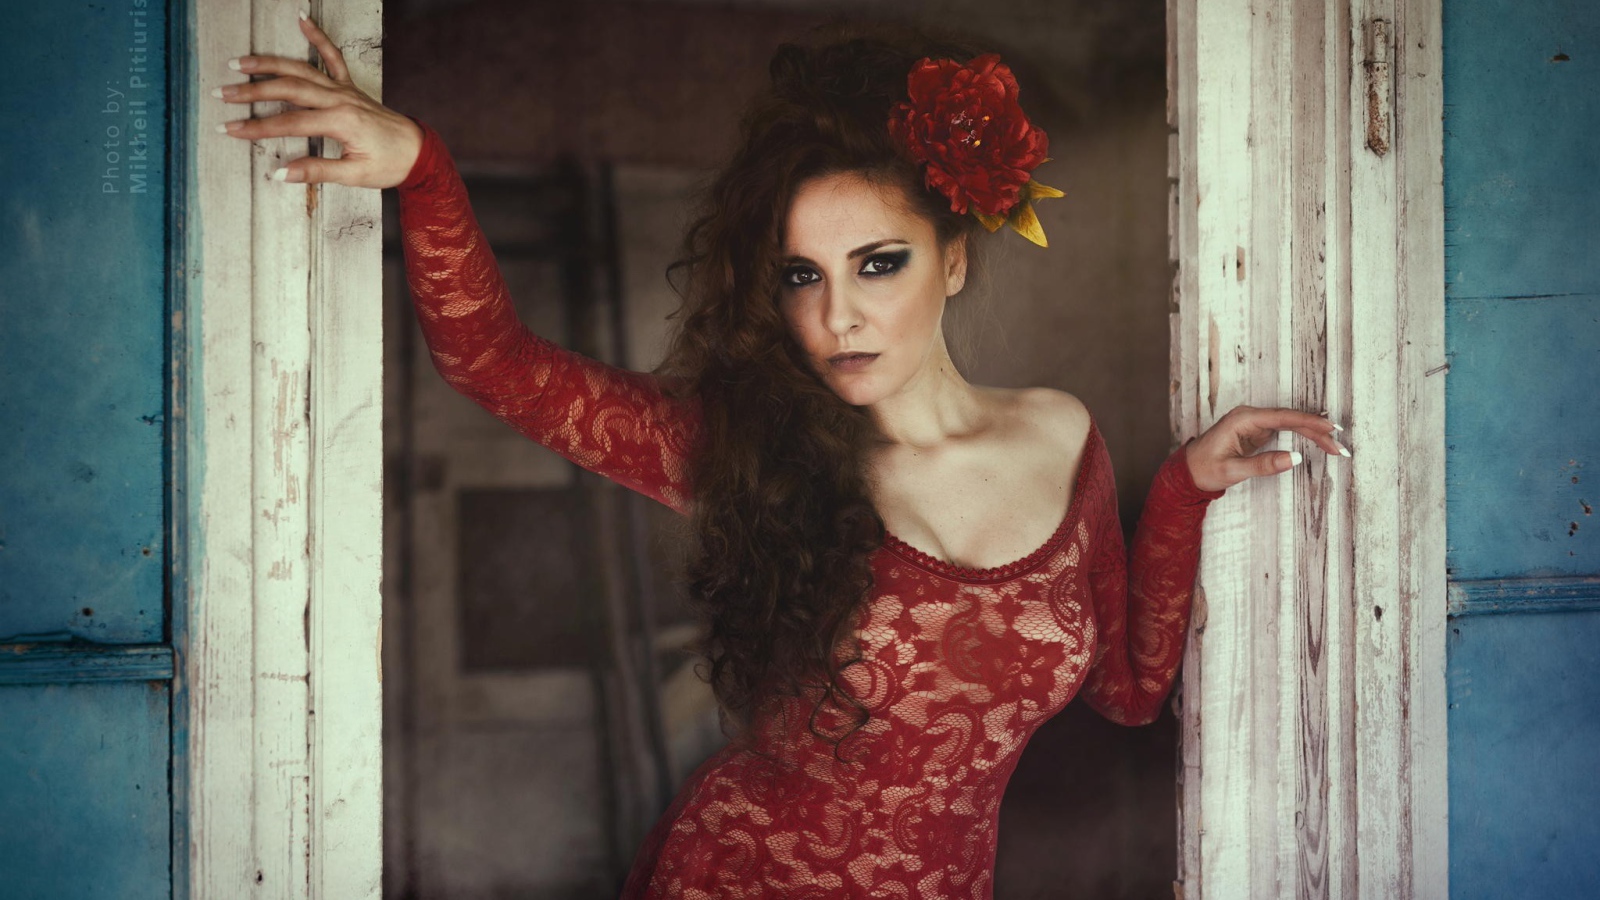 Испанская девушка в красном кружевном платье